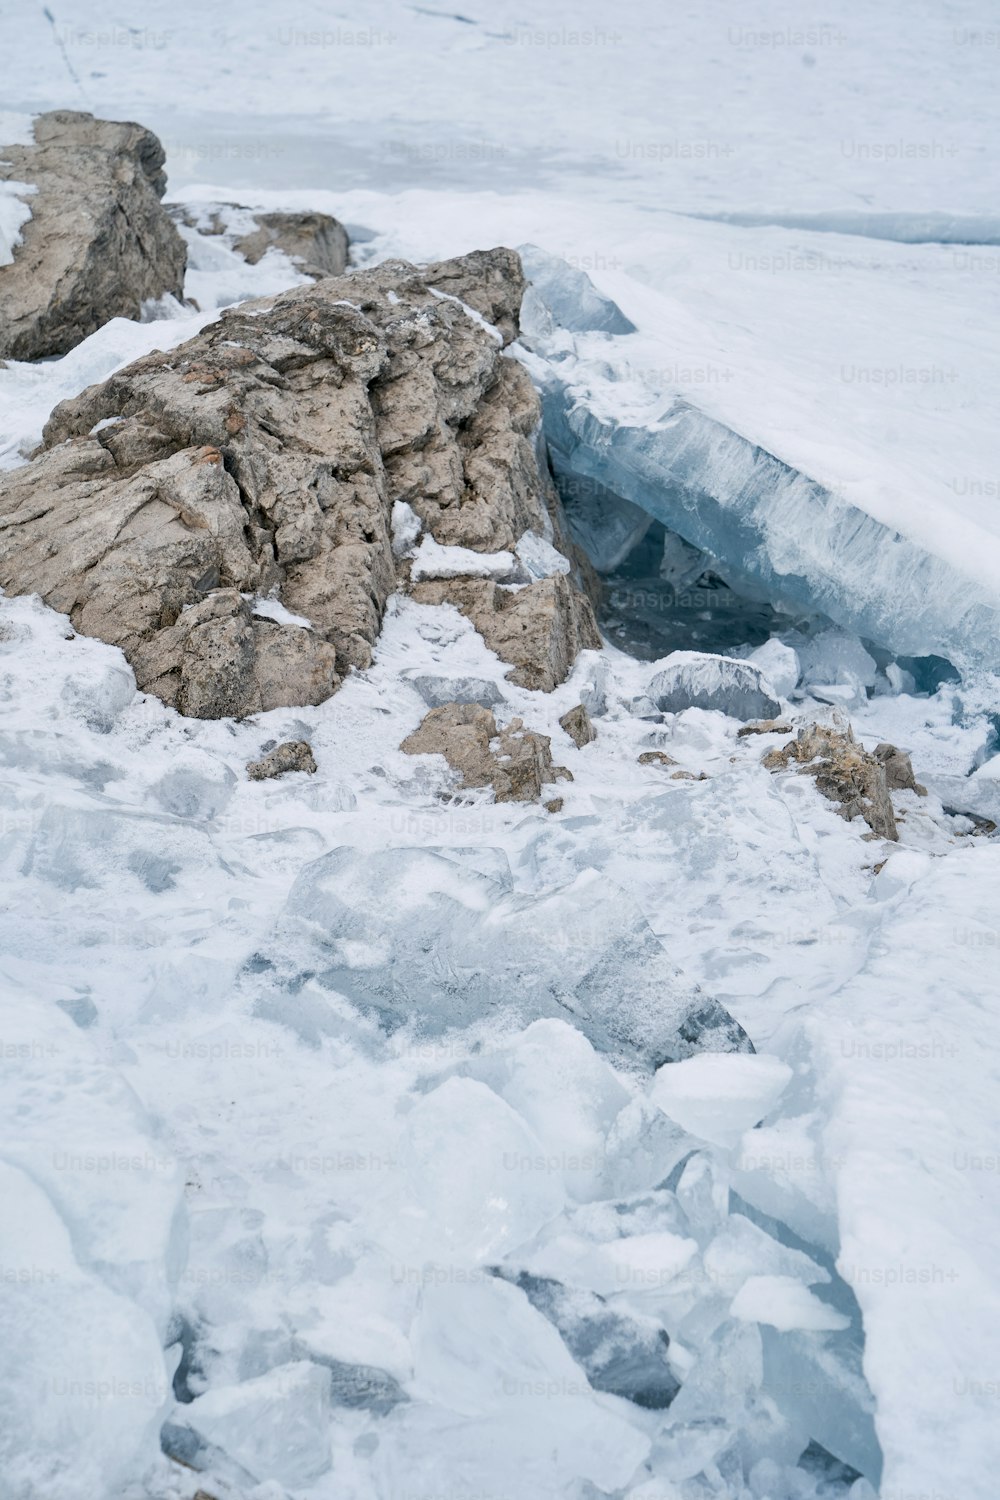 une zone enneigée avec des roches et de la glace